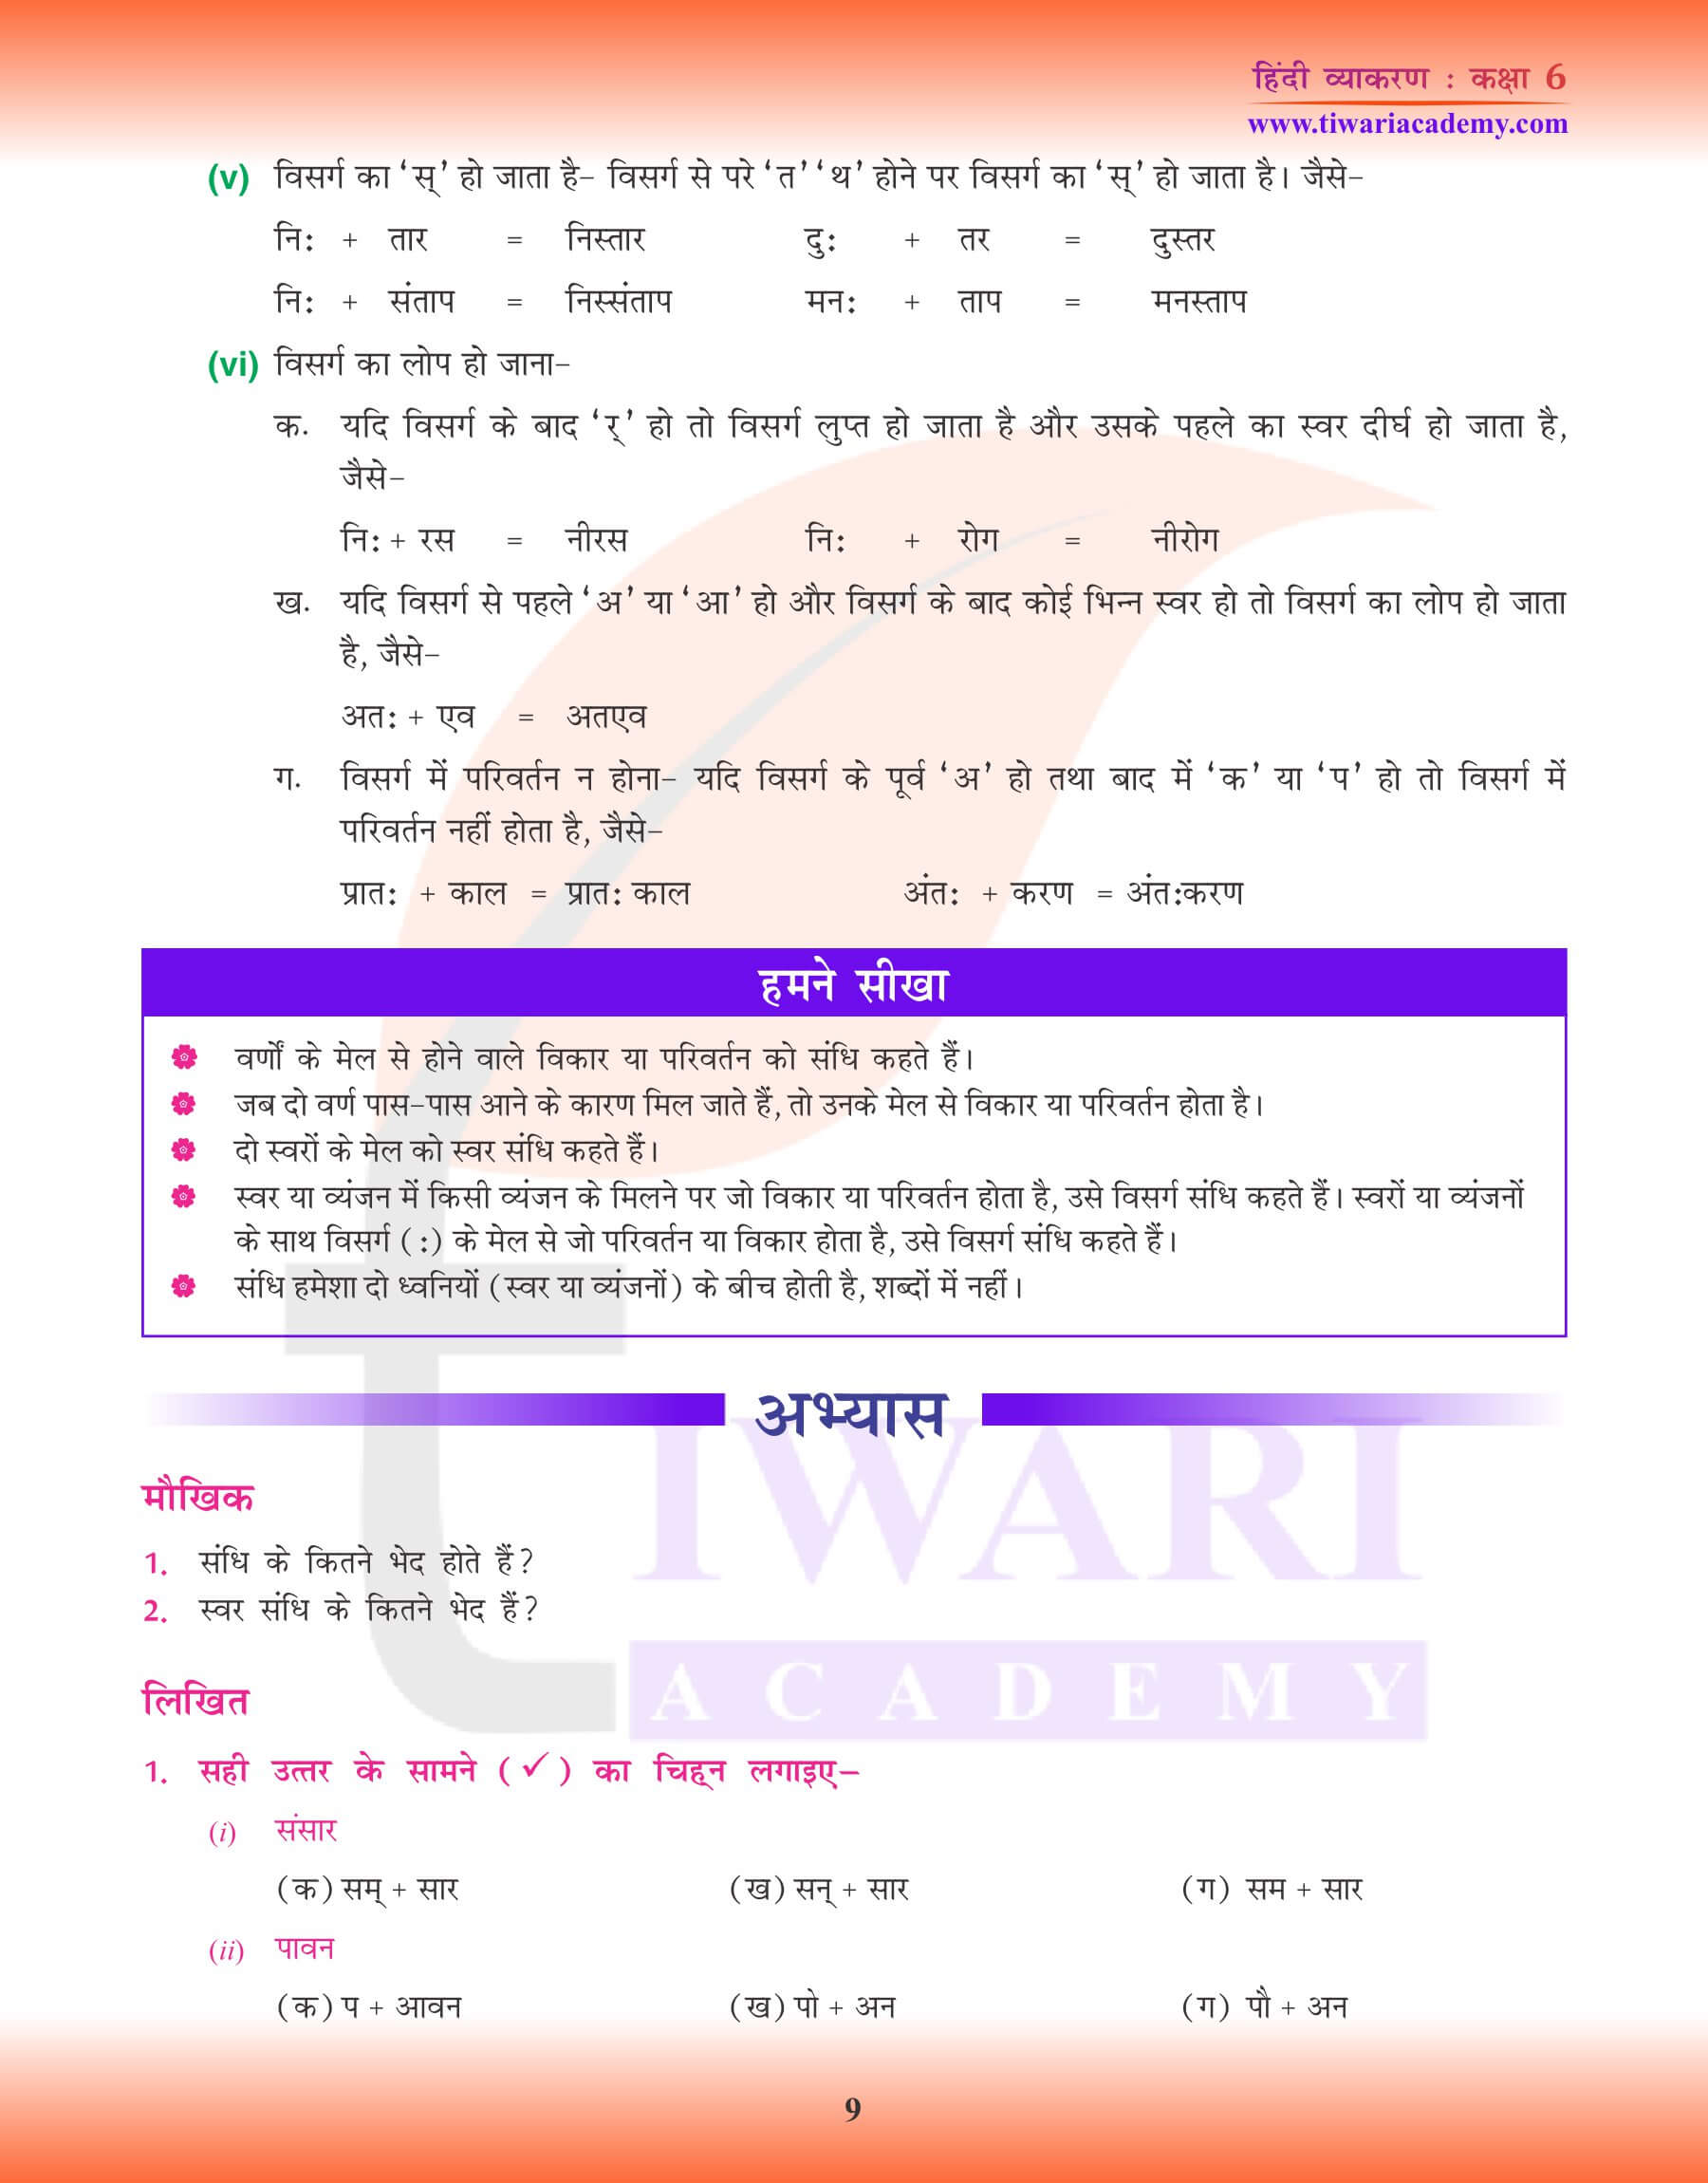 कक्षा 6 हिंदी व्याकरण संधि के लिए अभ्यास